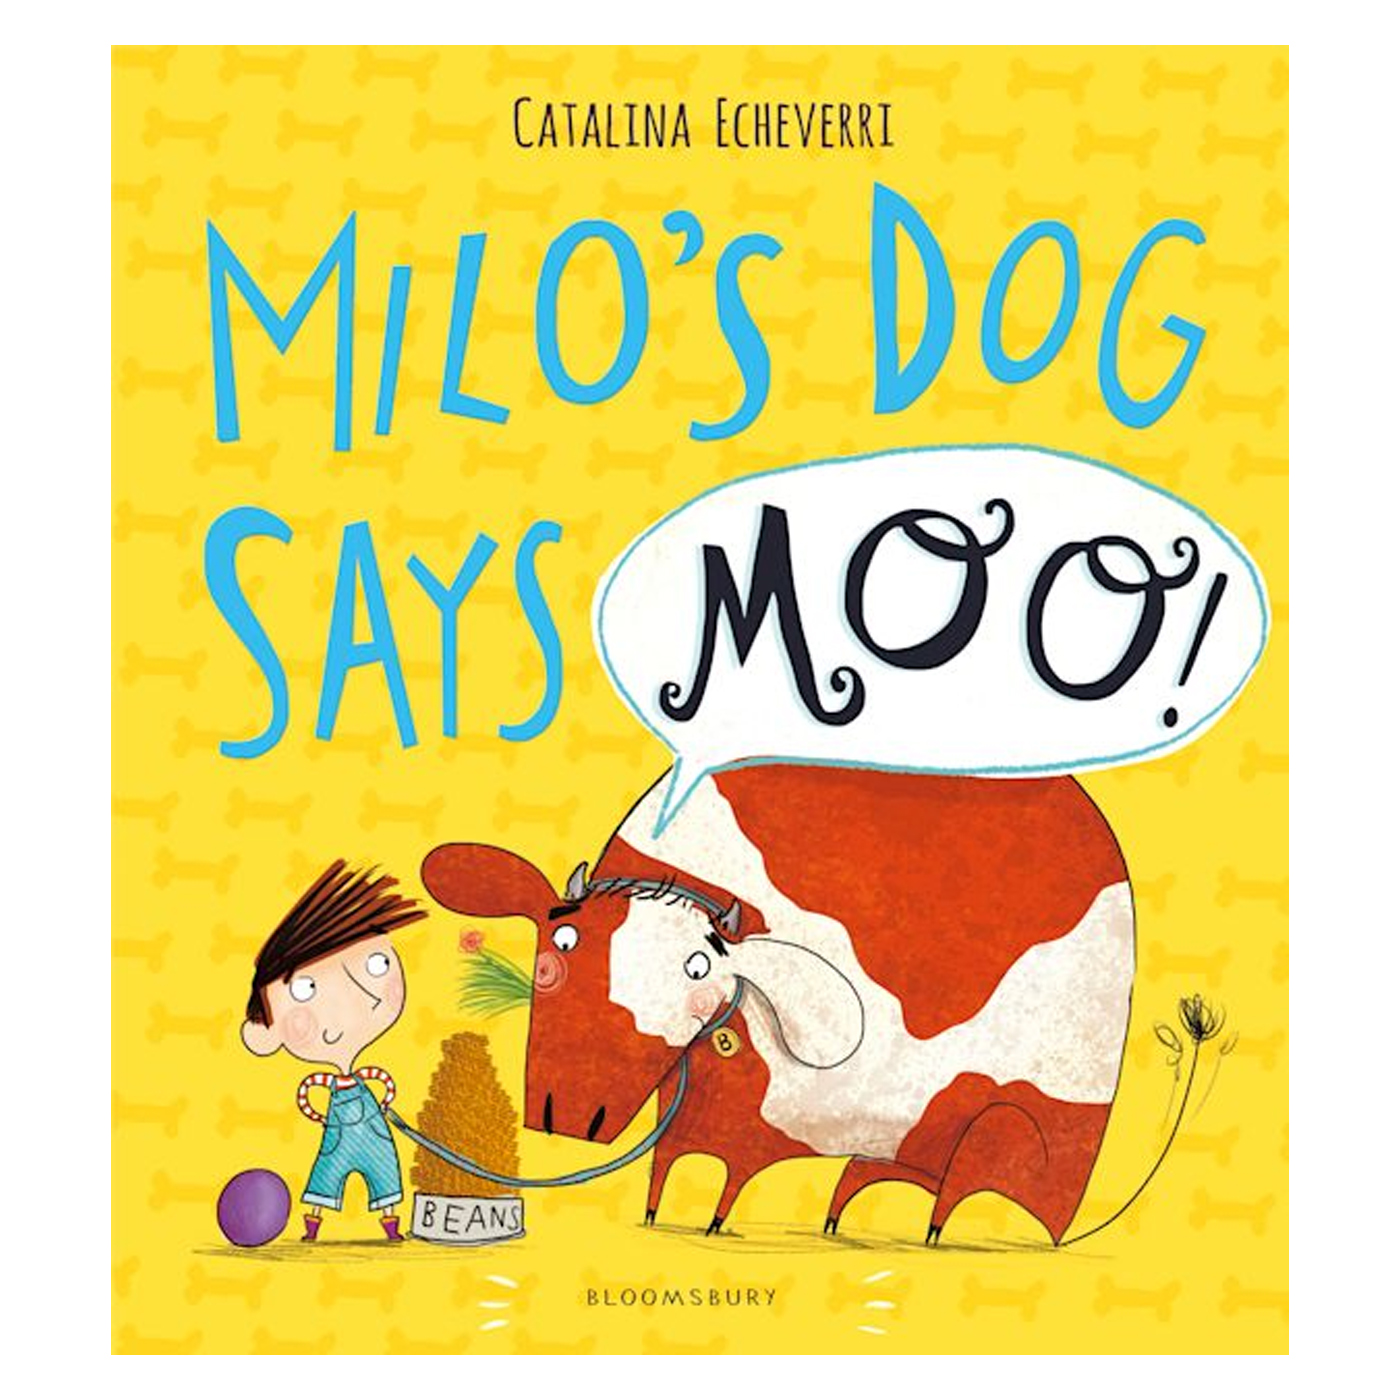  Milo's Dog Says MOO!